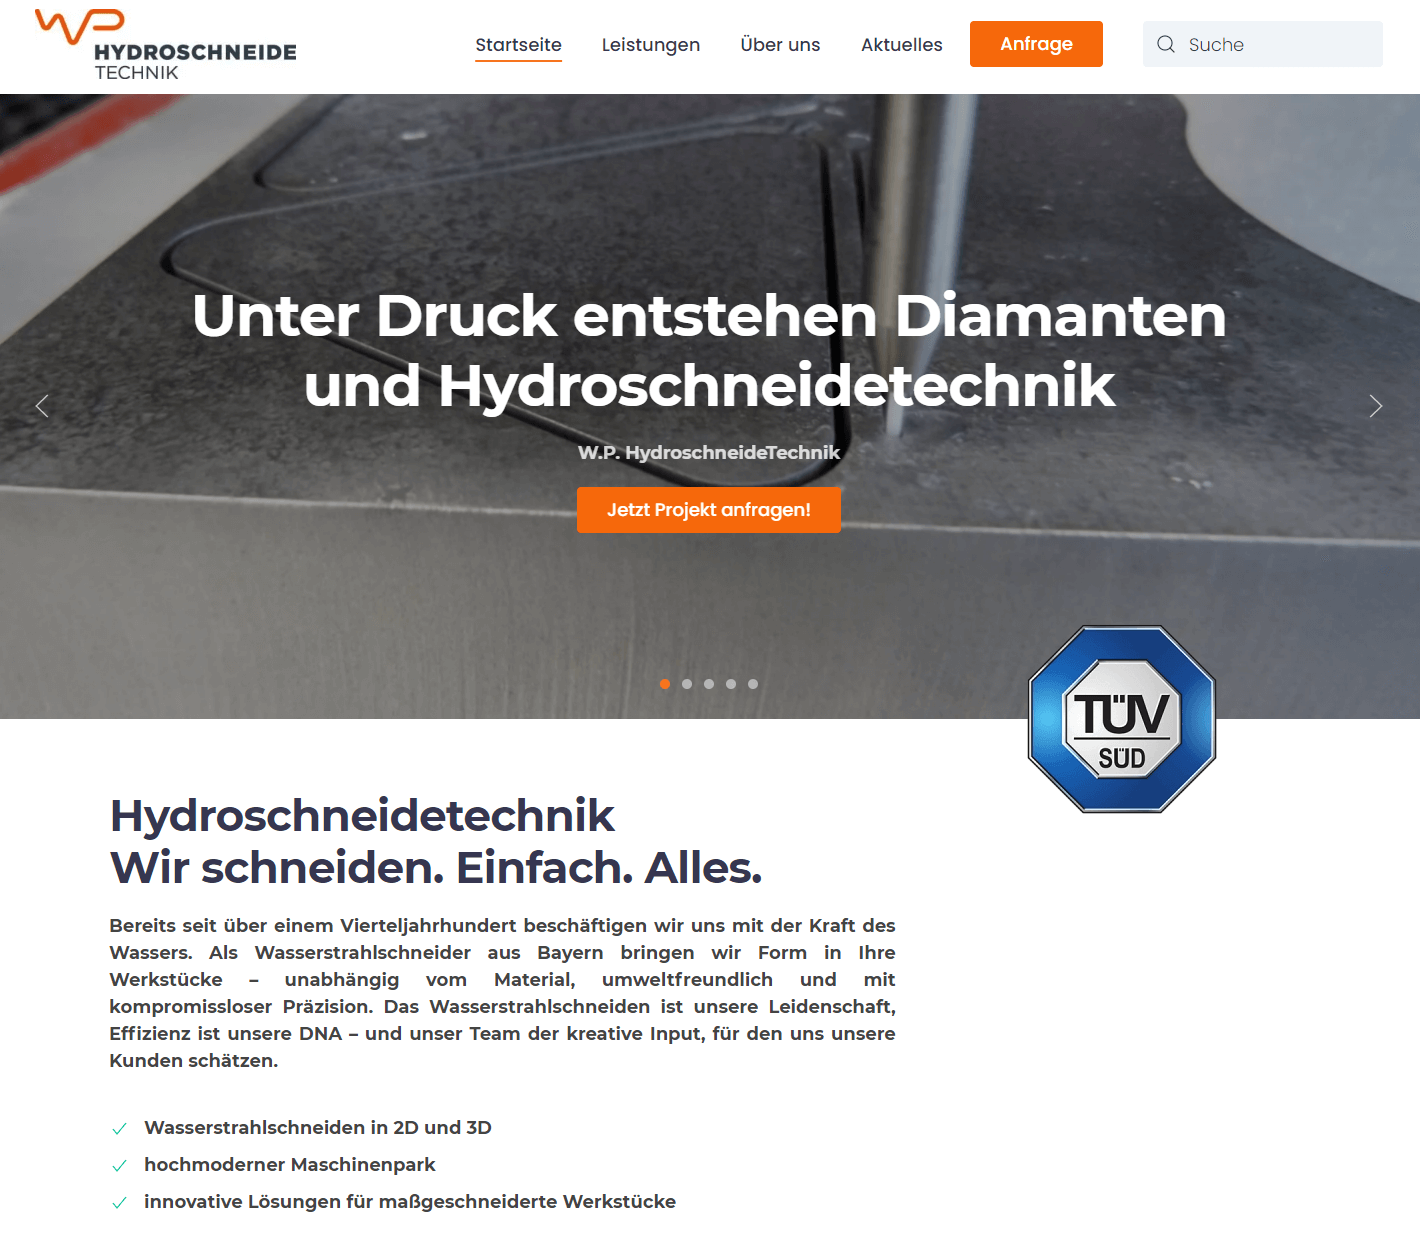 Die neue Website von WPFI HydroschneideTechnik ist nun online!